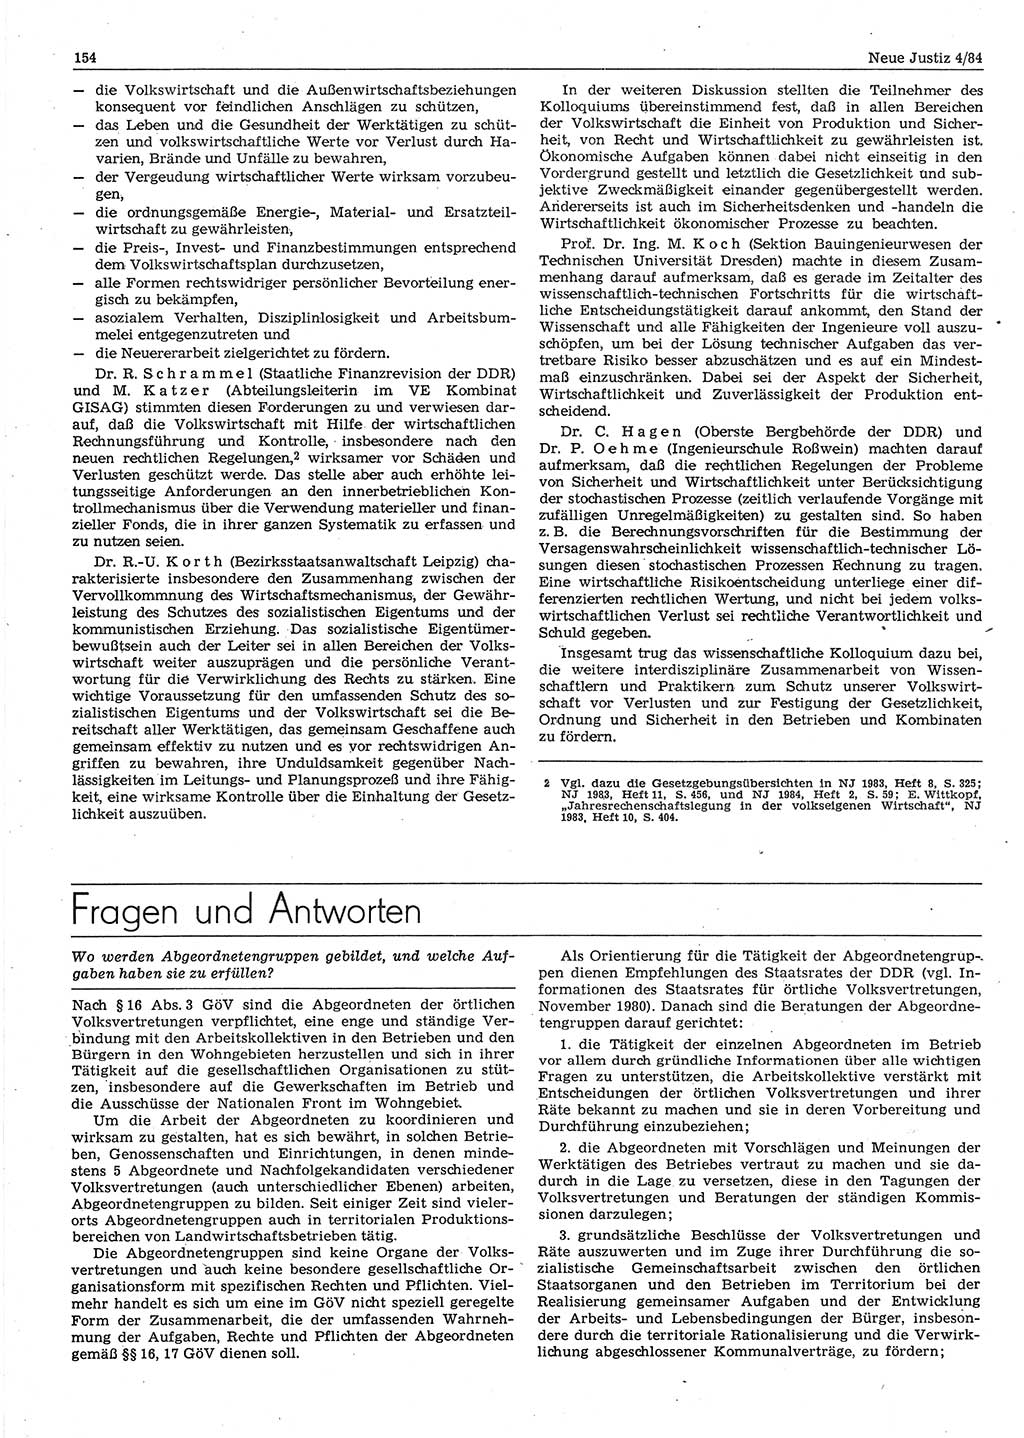 Neue Justiz (NJ), Zeitschrift für sozialistisches Recht und Gesetzlichkeit [Deutsche Demokratische Republik (DDR)], 38. Jahrgang 1984, Seite 154 (NJ DDR 1984, S. 154)